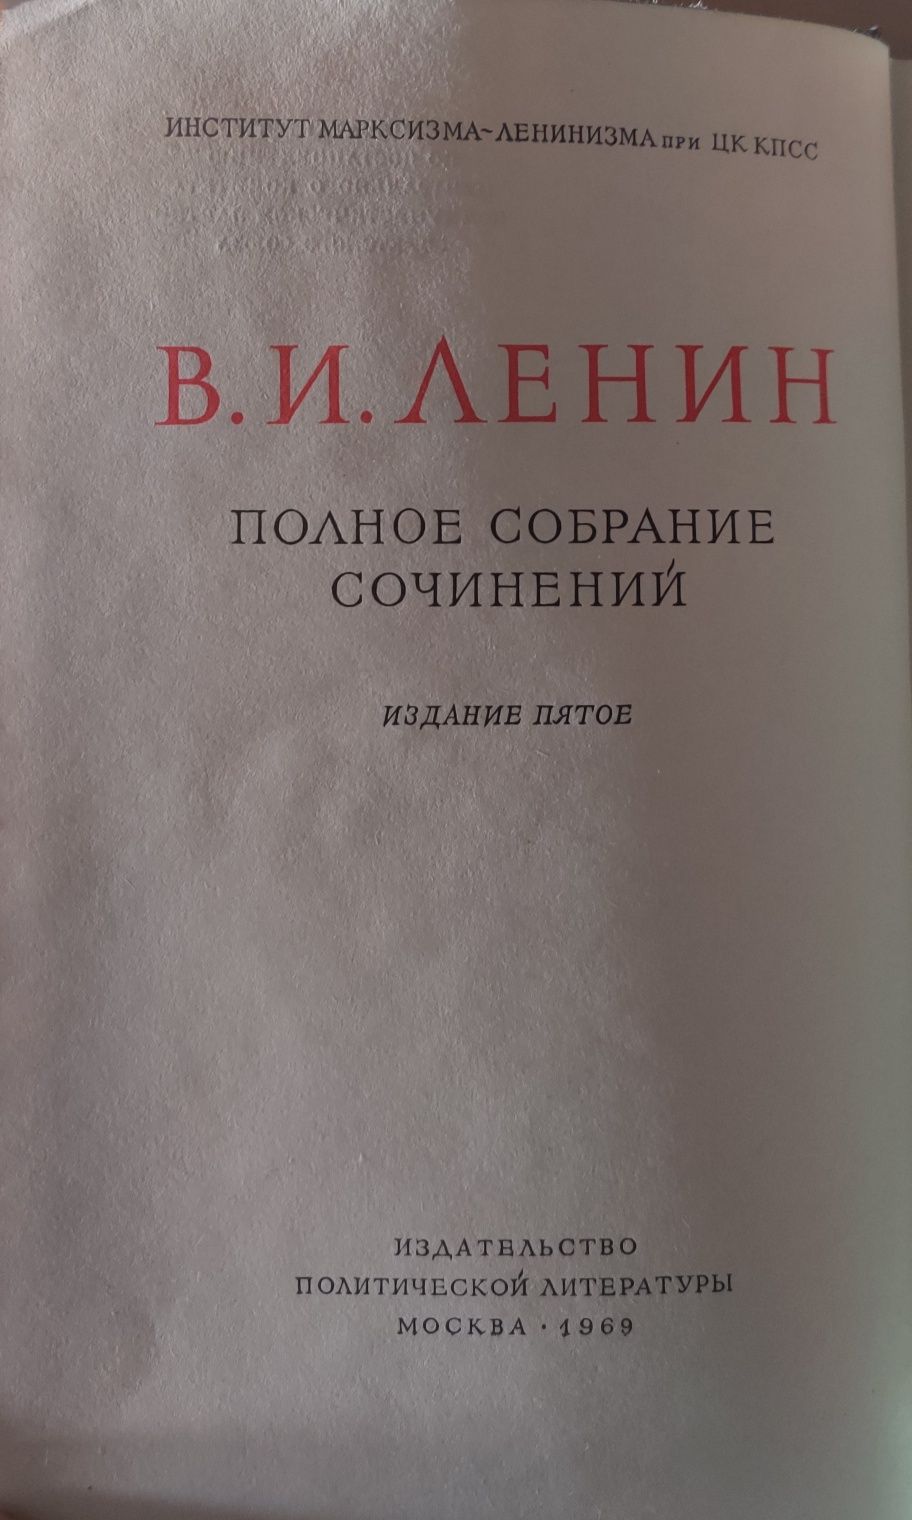 Полное собрание сочинений В.И.Ленина